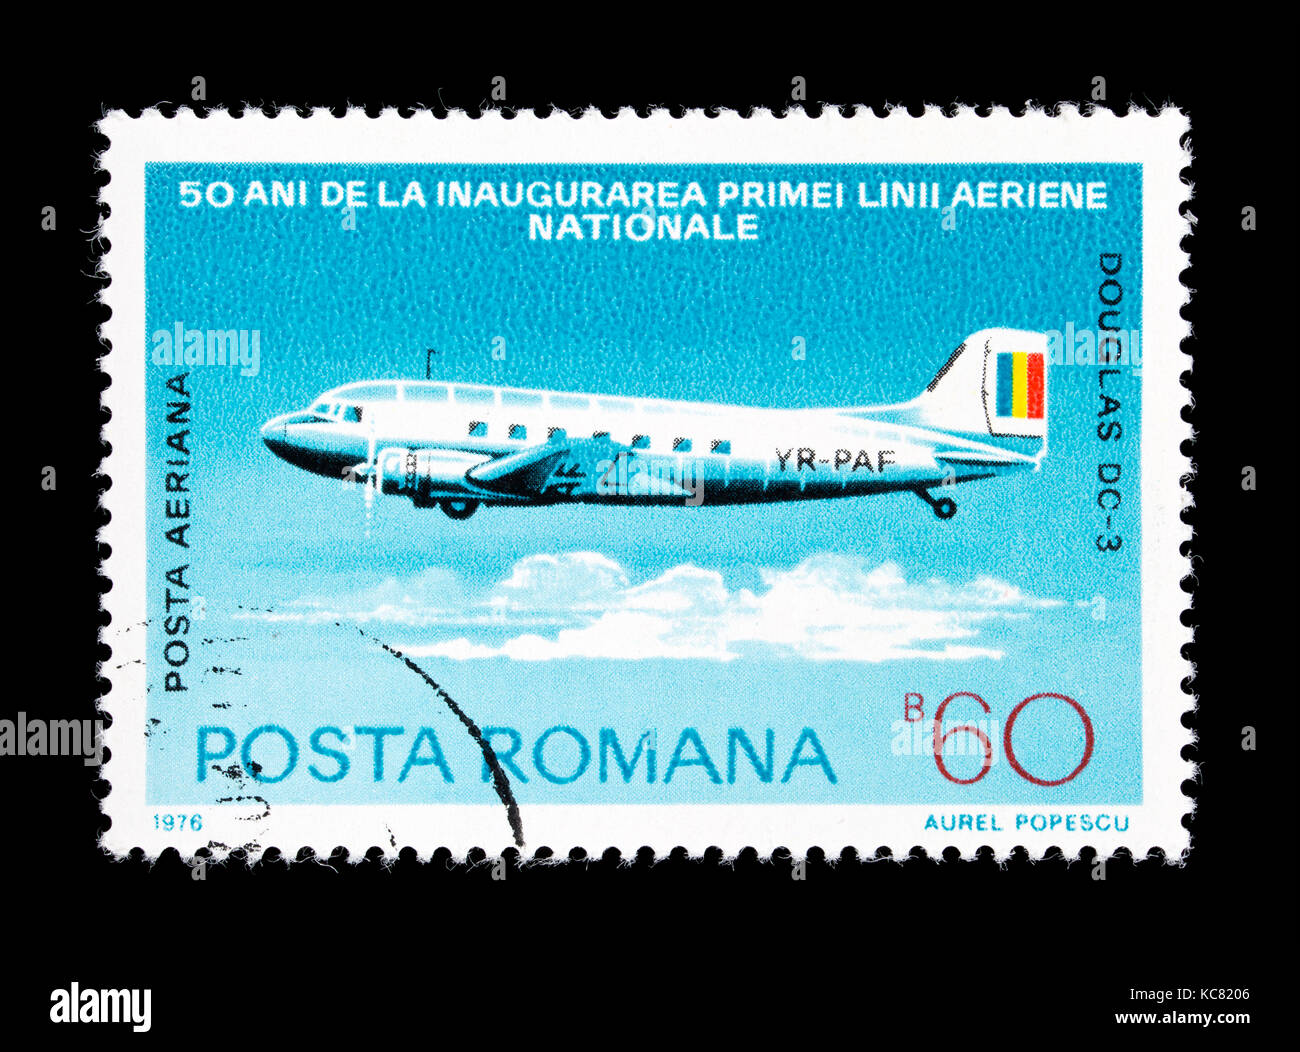 Timbre-poste de Roumanie représentant un avion Douglas DC-3, 50-ième anniversaire de la Romanian National Airlines. Banque D'Images